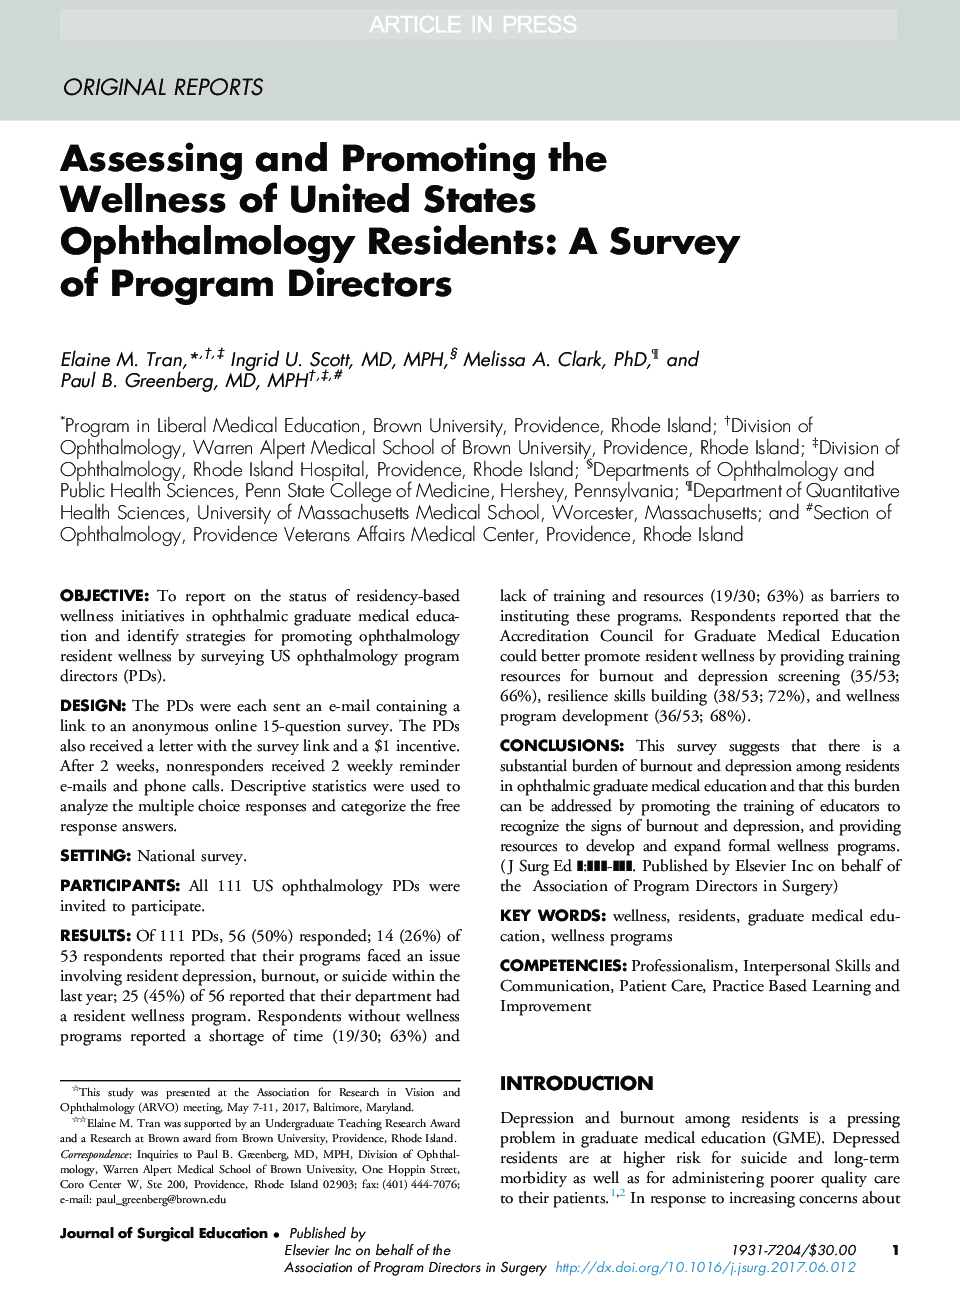 ارزیابی و ارتقا سلامت ساکنان چشم پزشکی ایالات متحده: بررسی مدیران برنامه 